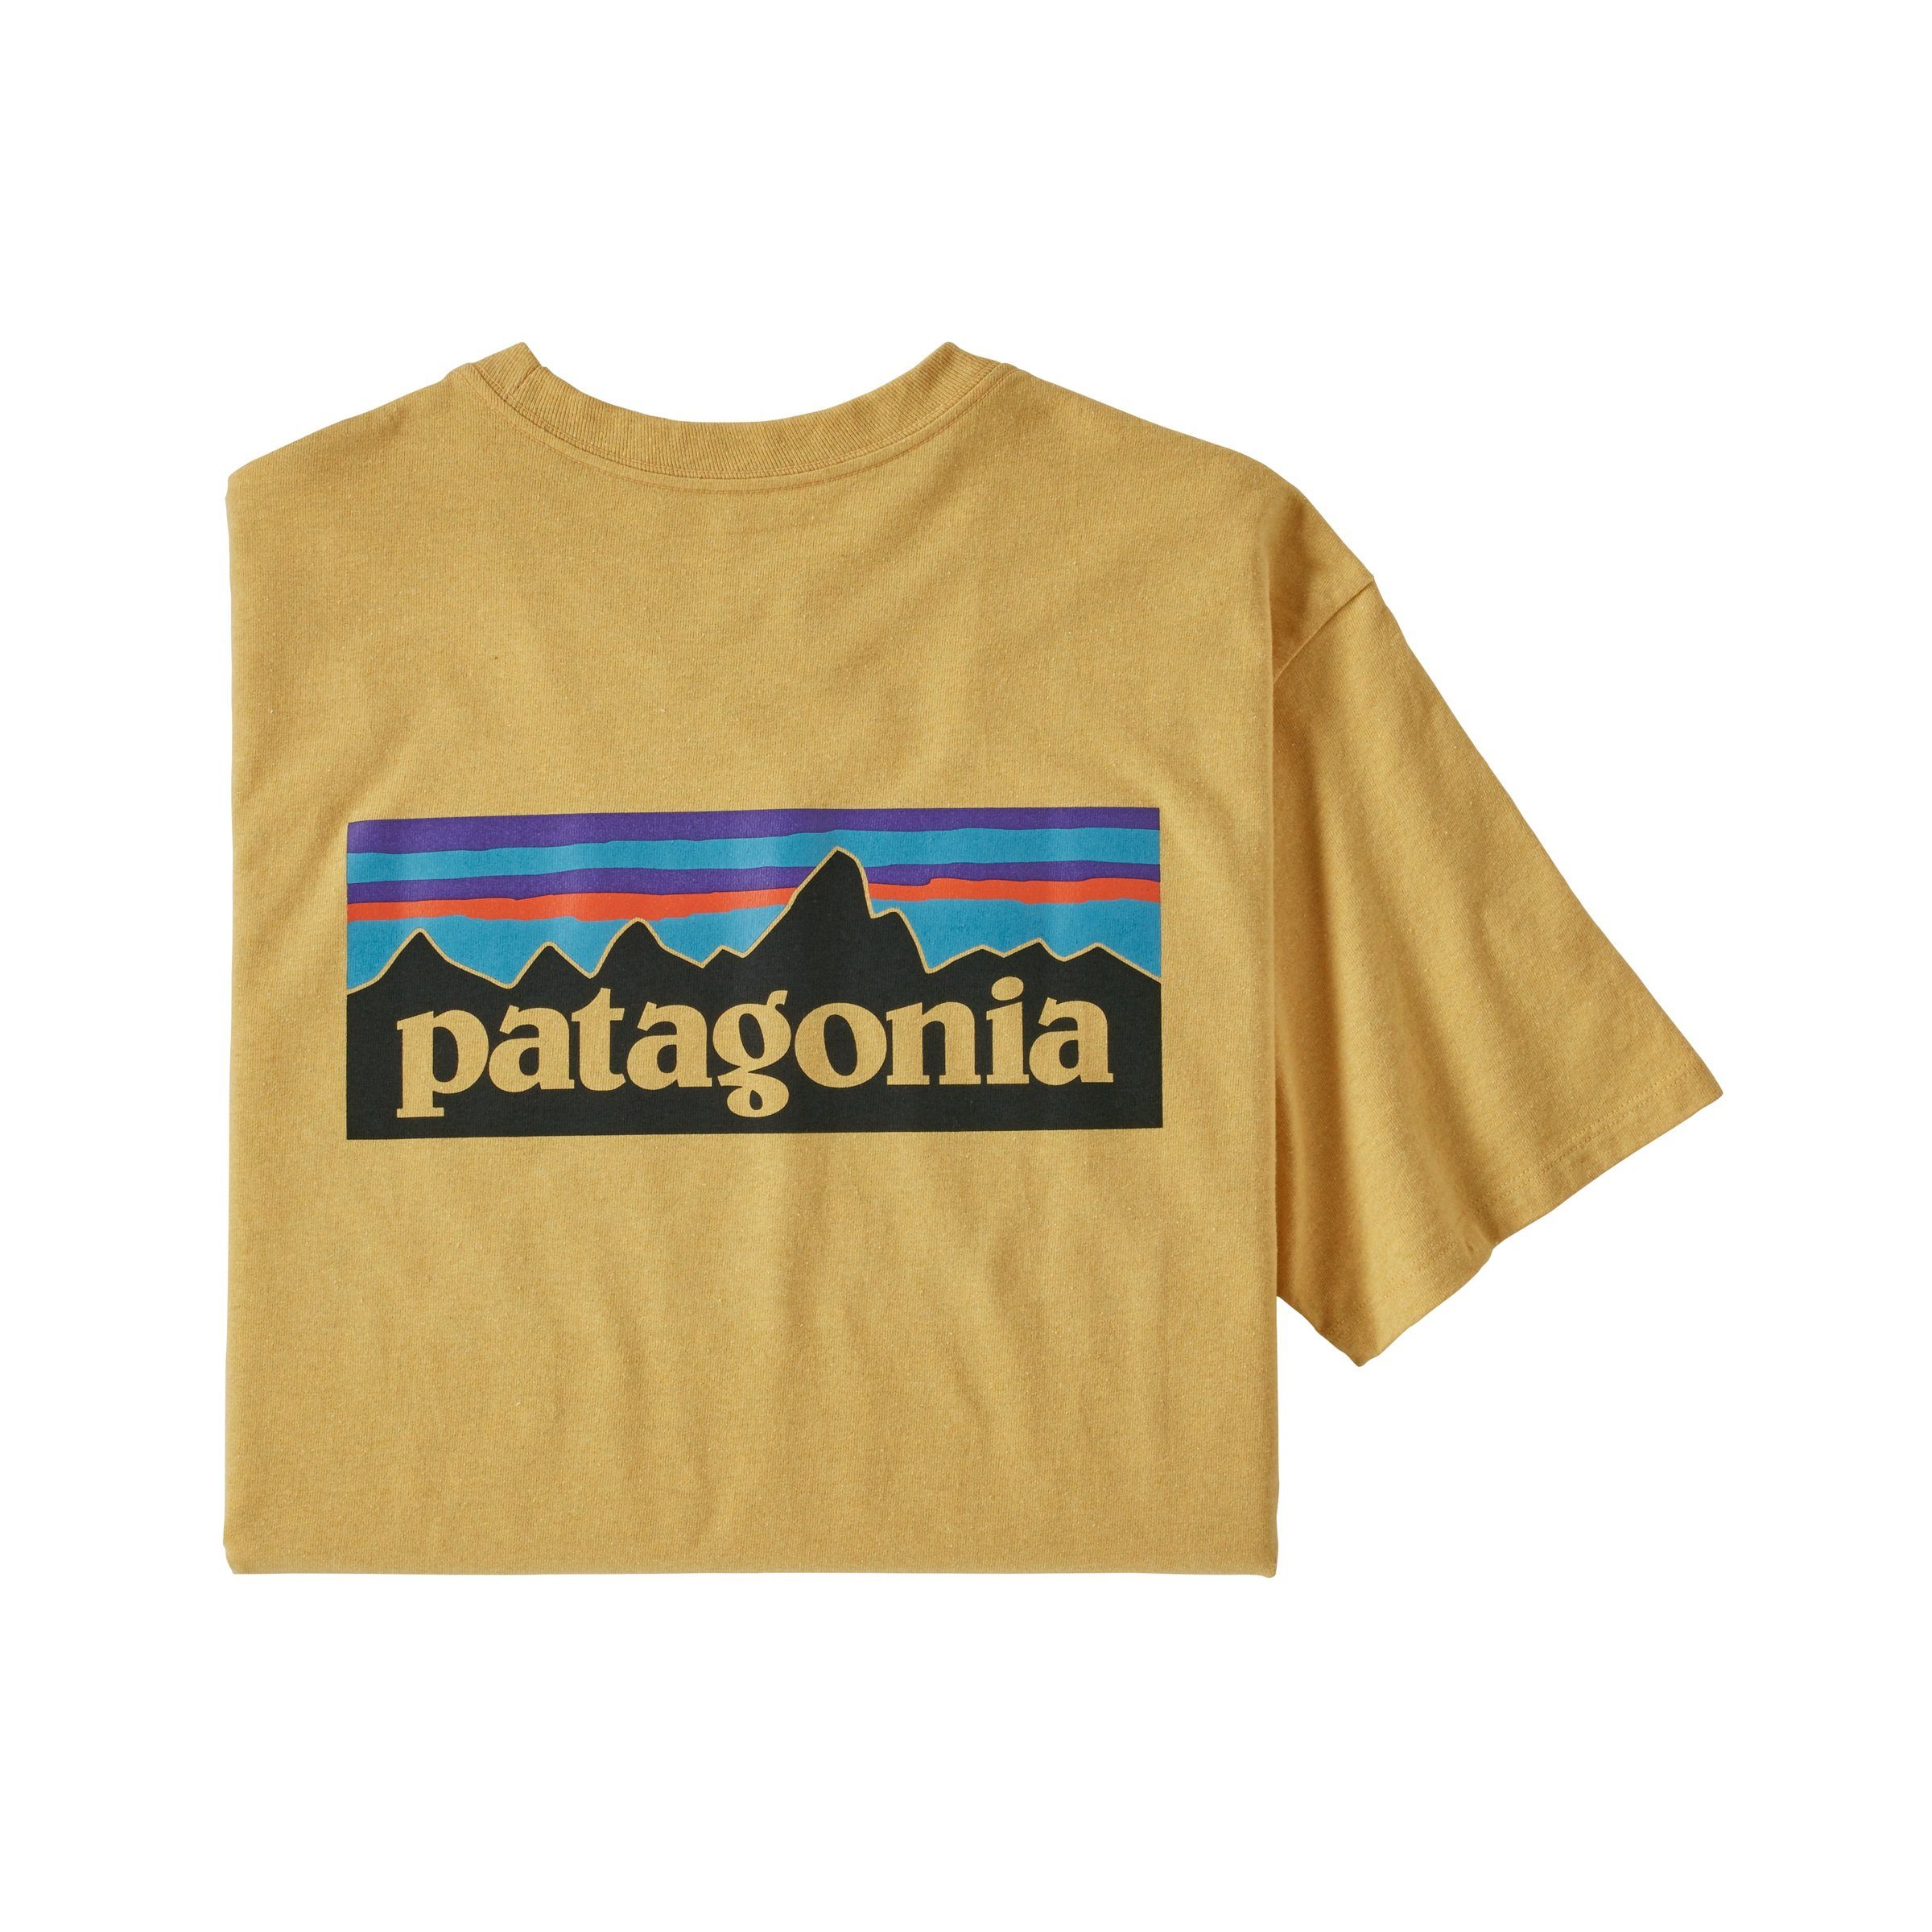 Patagonia T-Shirt Adult Patagonia plume Logo P-6 Herren grey T-Shirt Responsibili-Tee